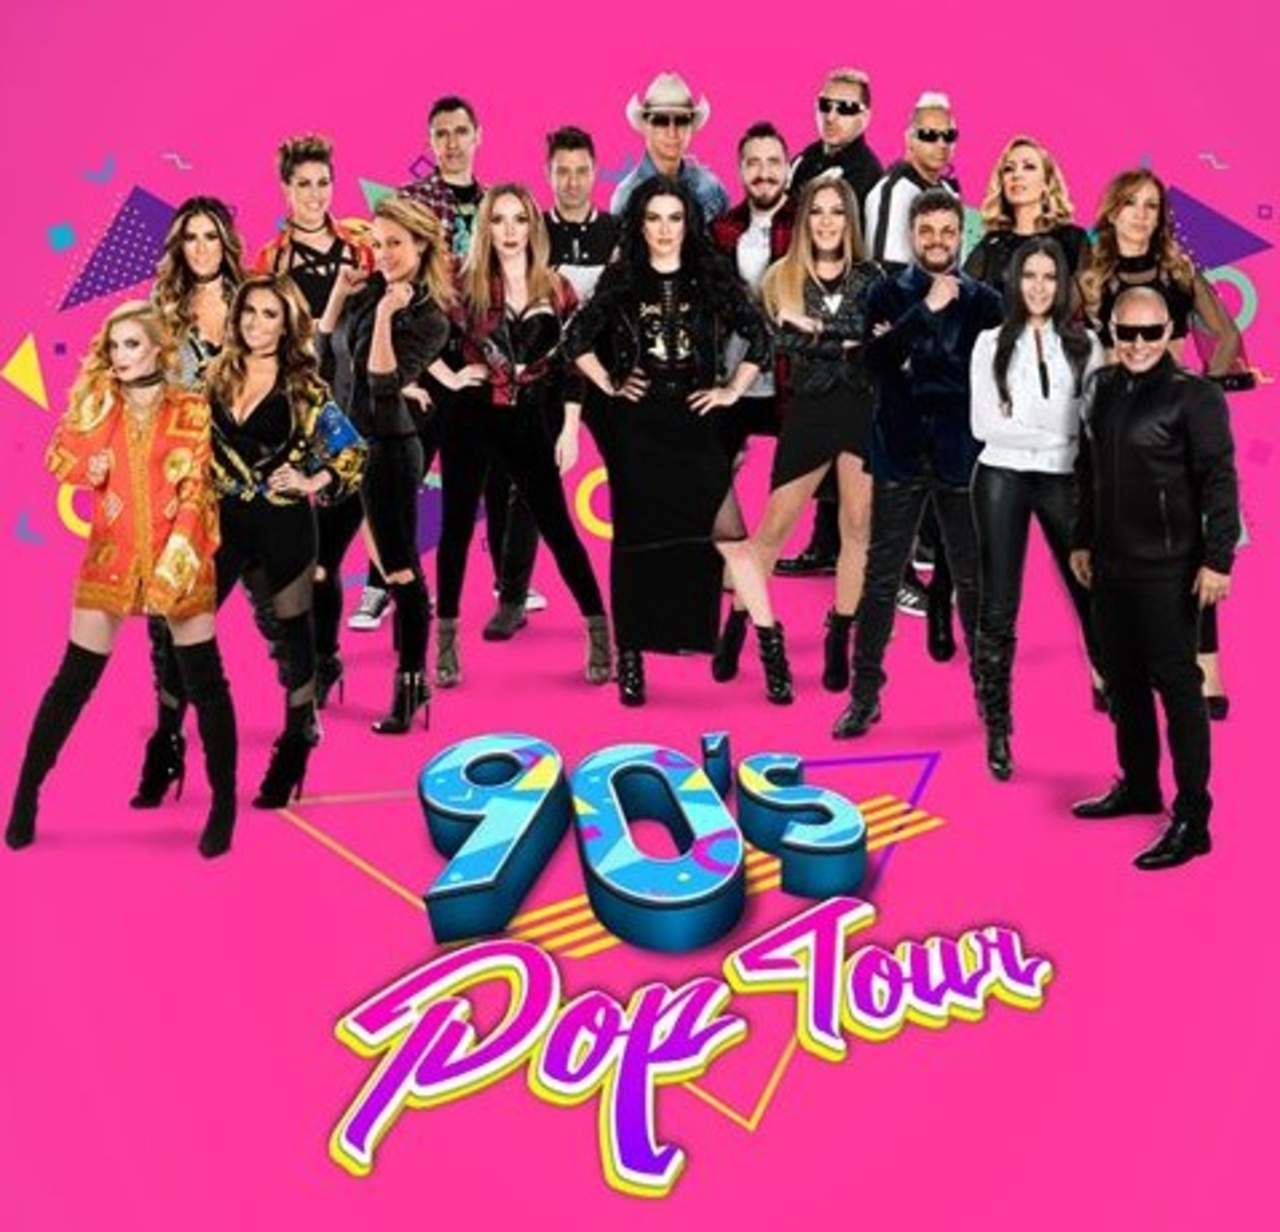 2016 90s tour